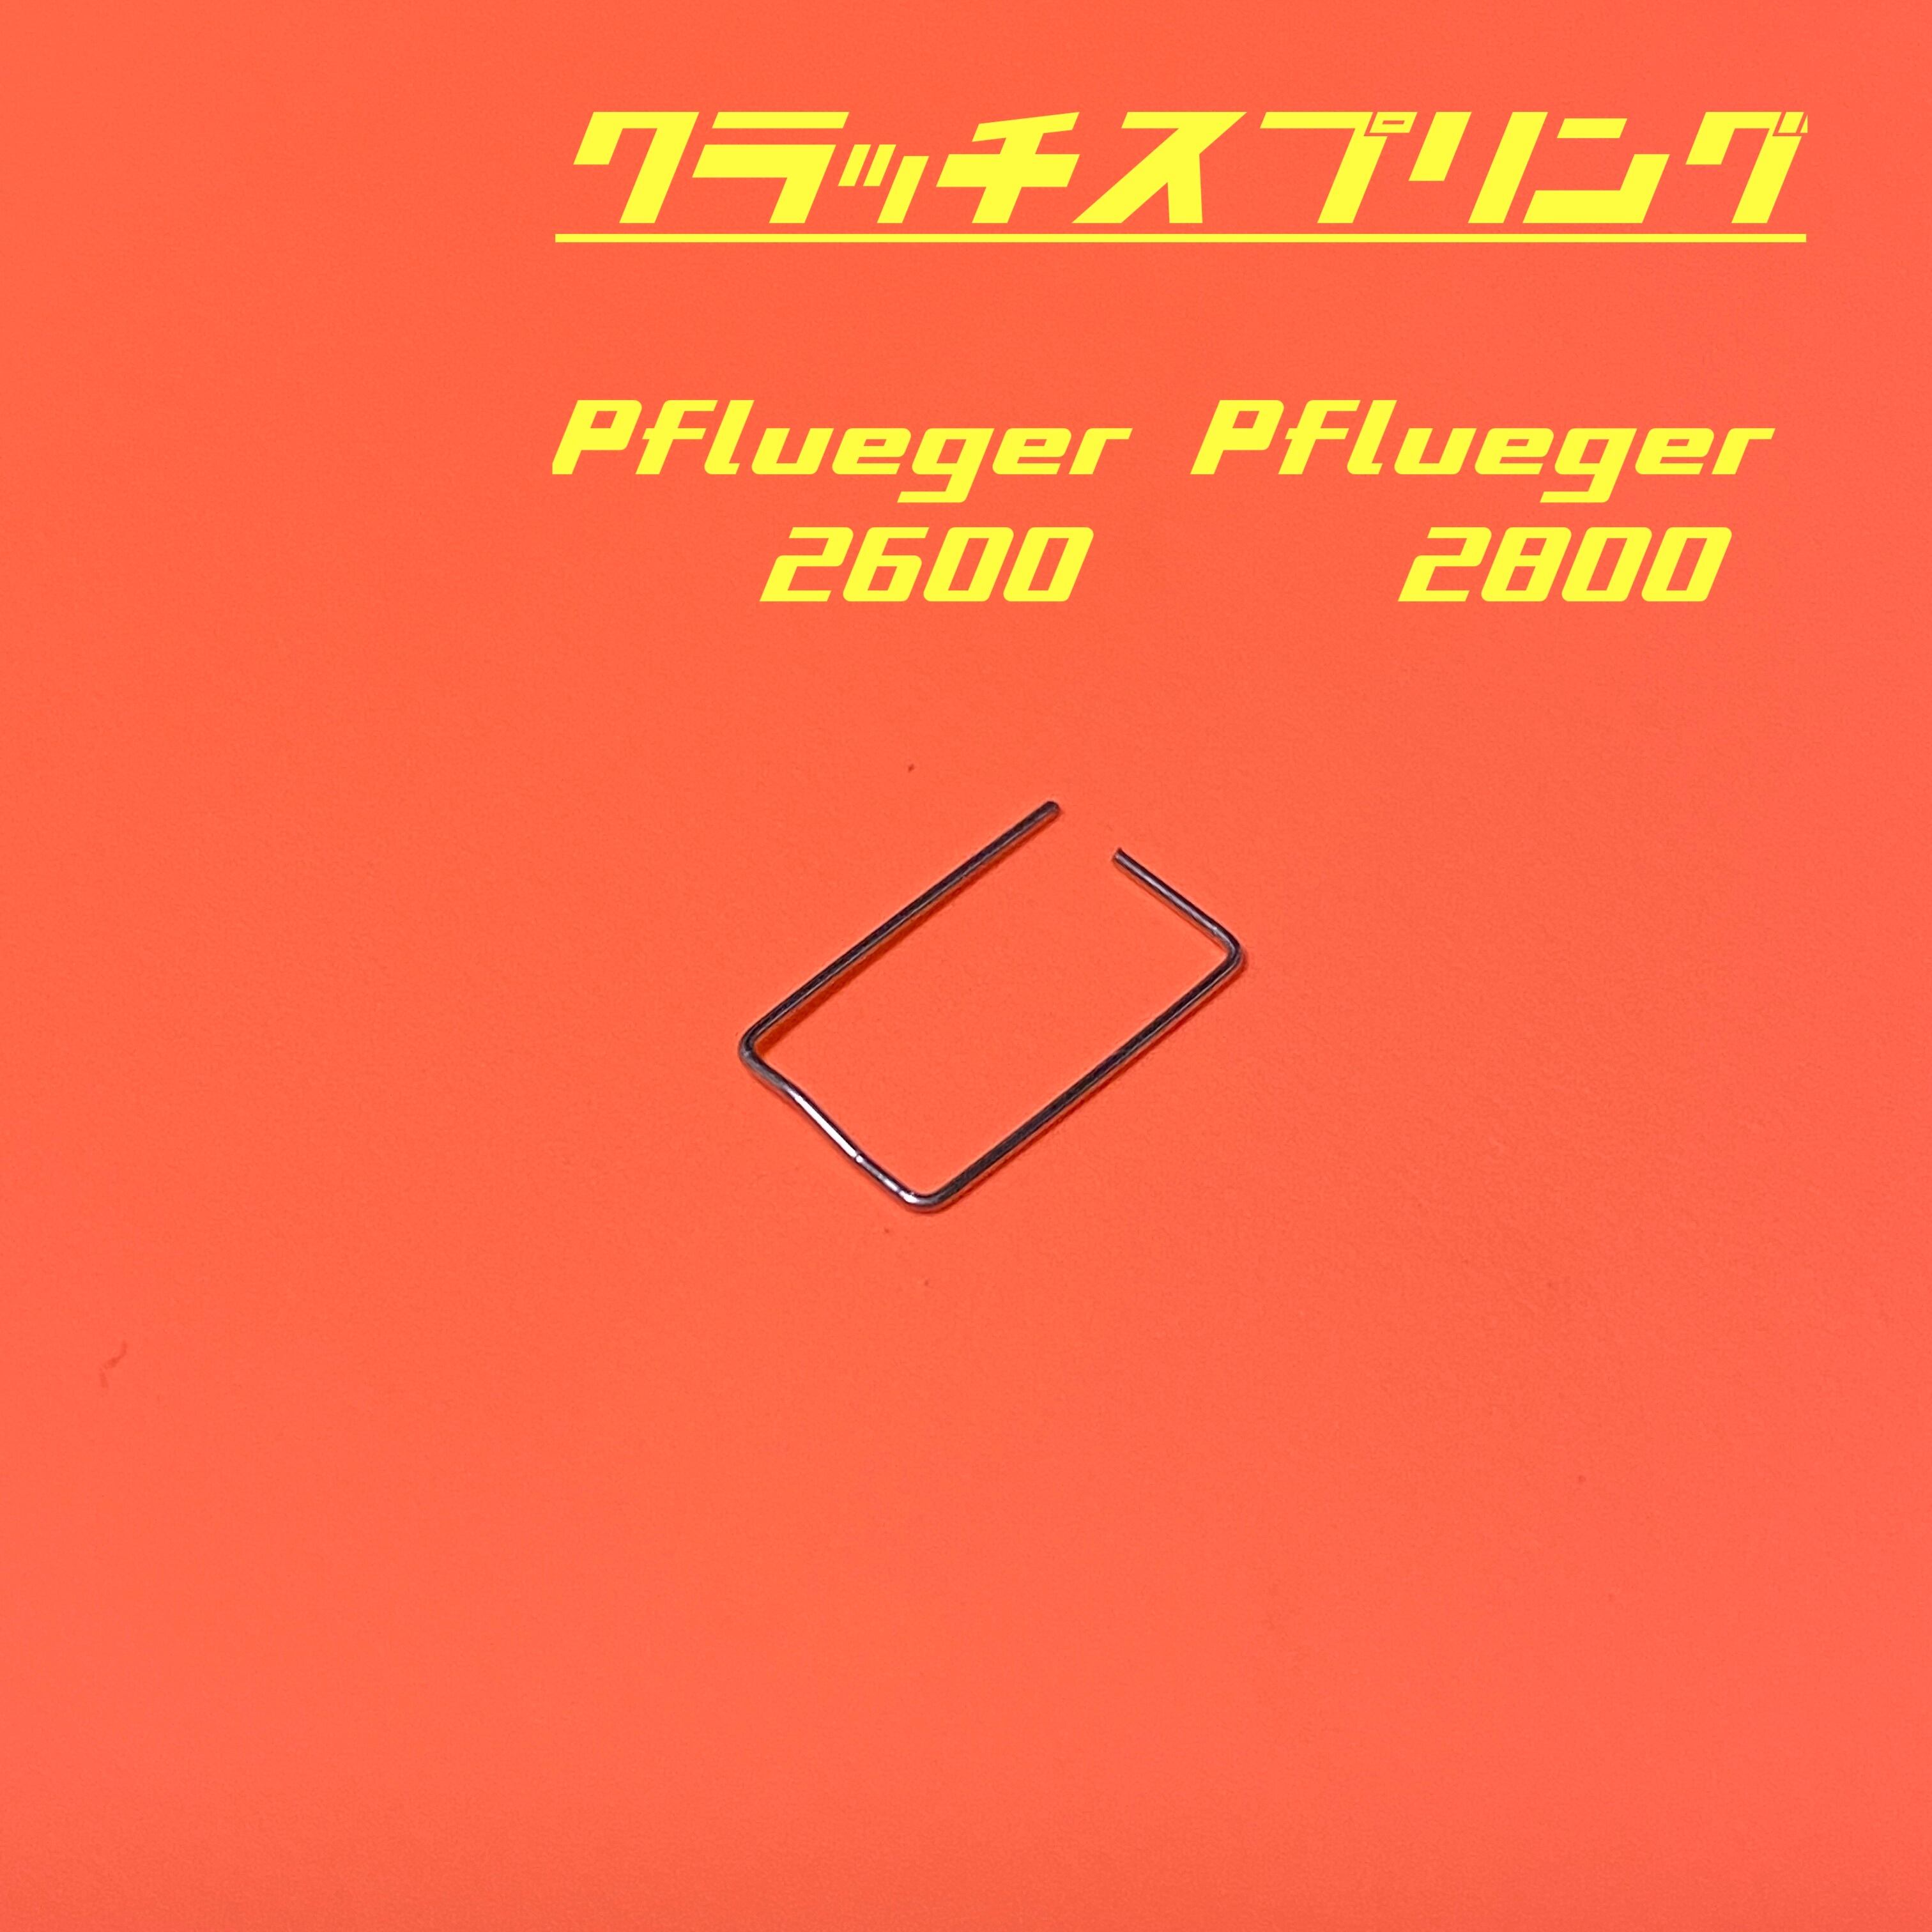 Pflueger 2600 フルーガー2600